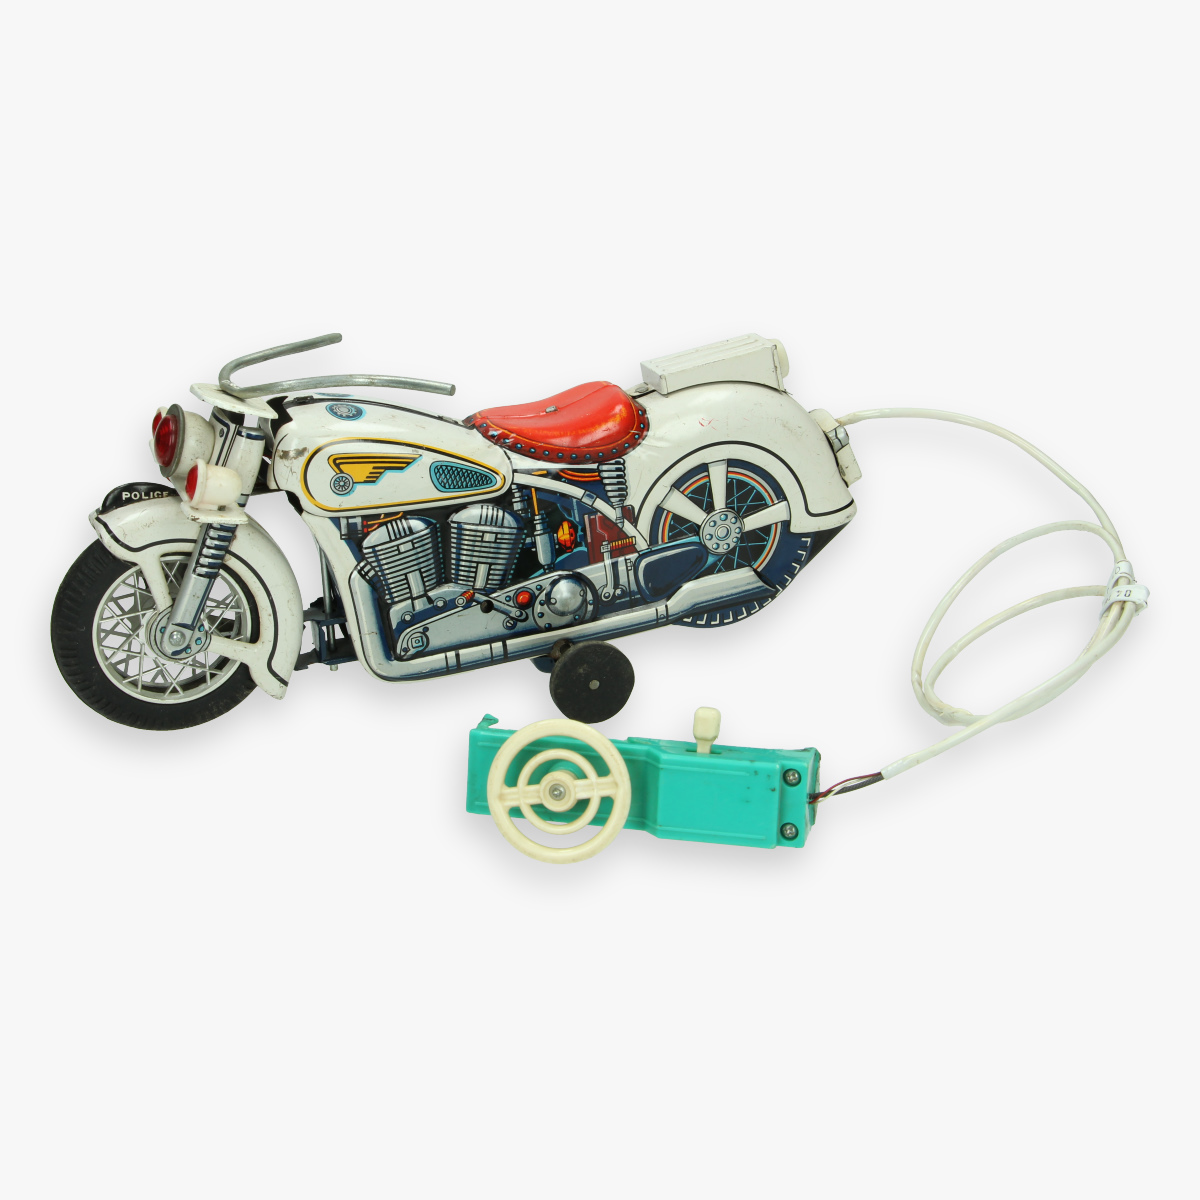 Afbeeldingen van blikken motor modern toys made in Japan 30 cm (mist stukje van de afstandsbediening)